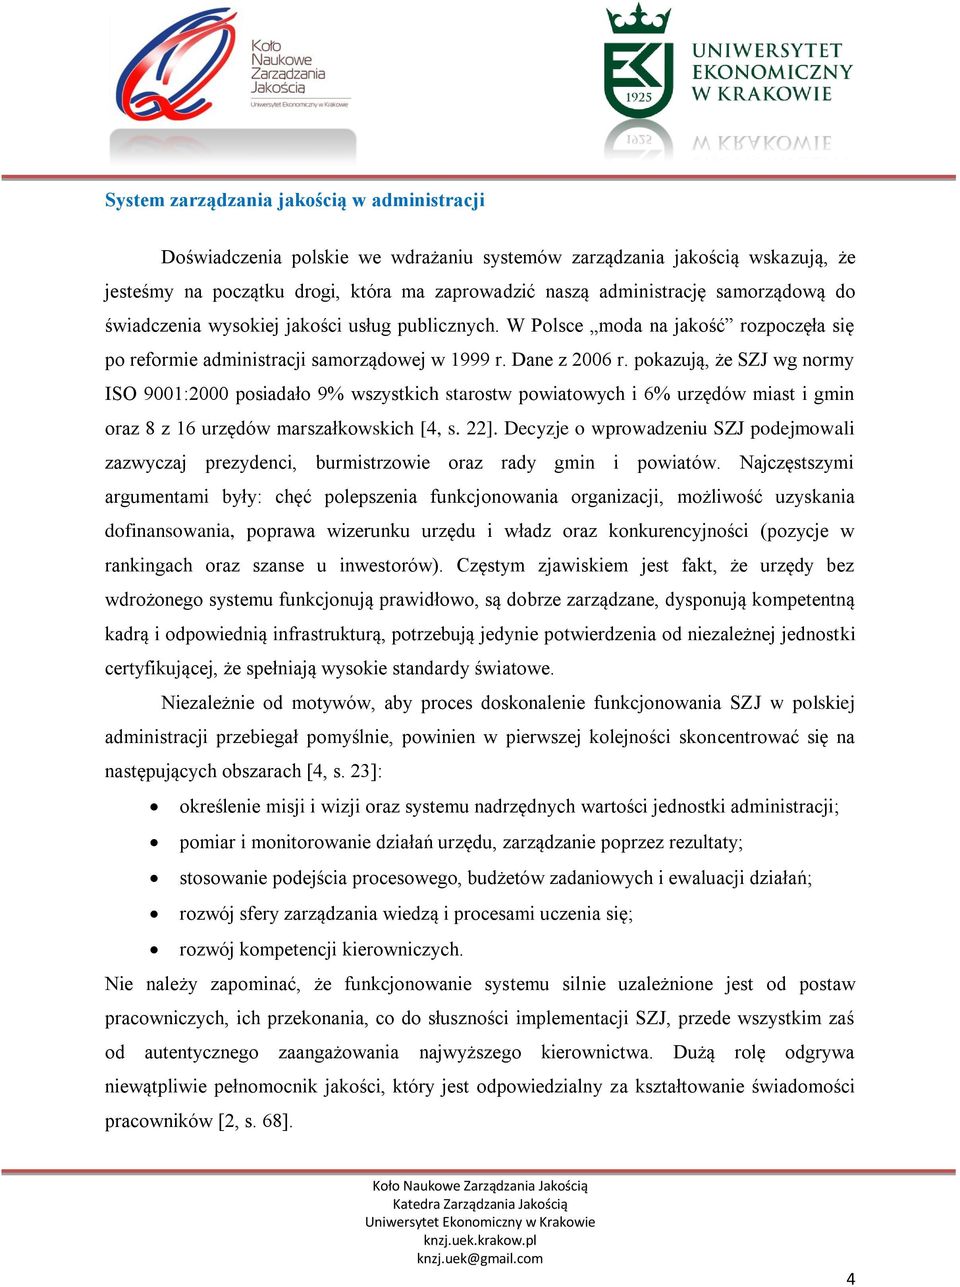 pokazują, że SZJ wg normy ISO 9001:2000 posiadało 9% wszystkich starostw powiatowych i 6% urzędów miast i gmin oraz 8 z 16 urzędów marszałkowskich [4, s. 22].